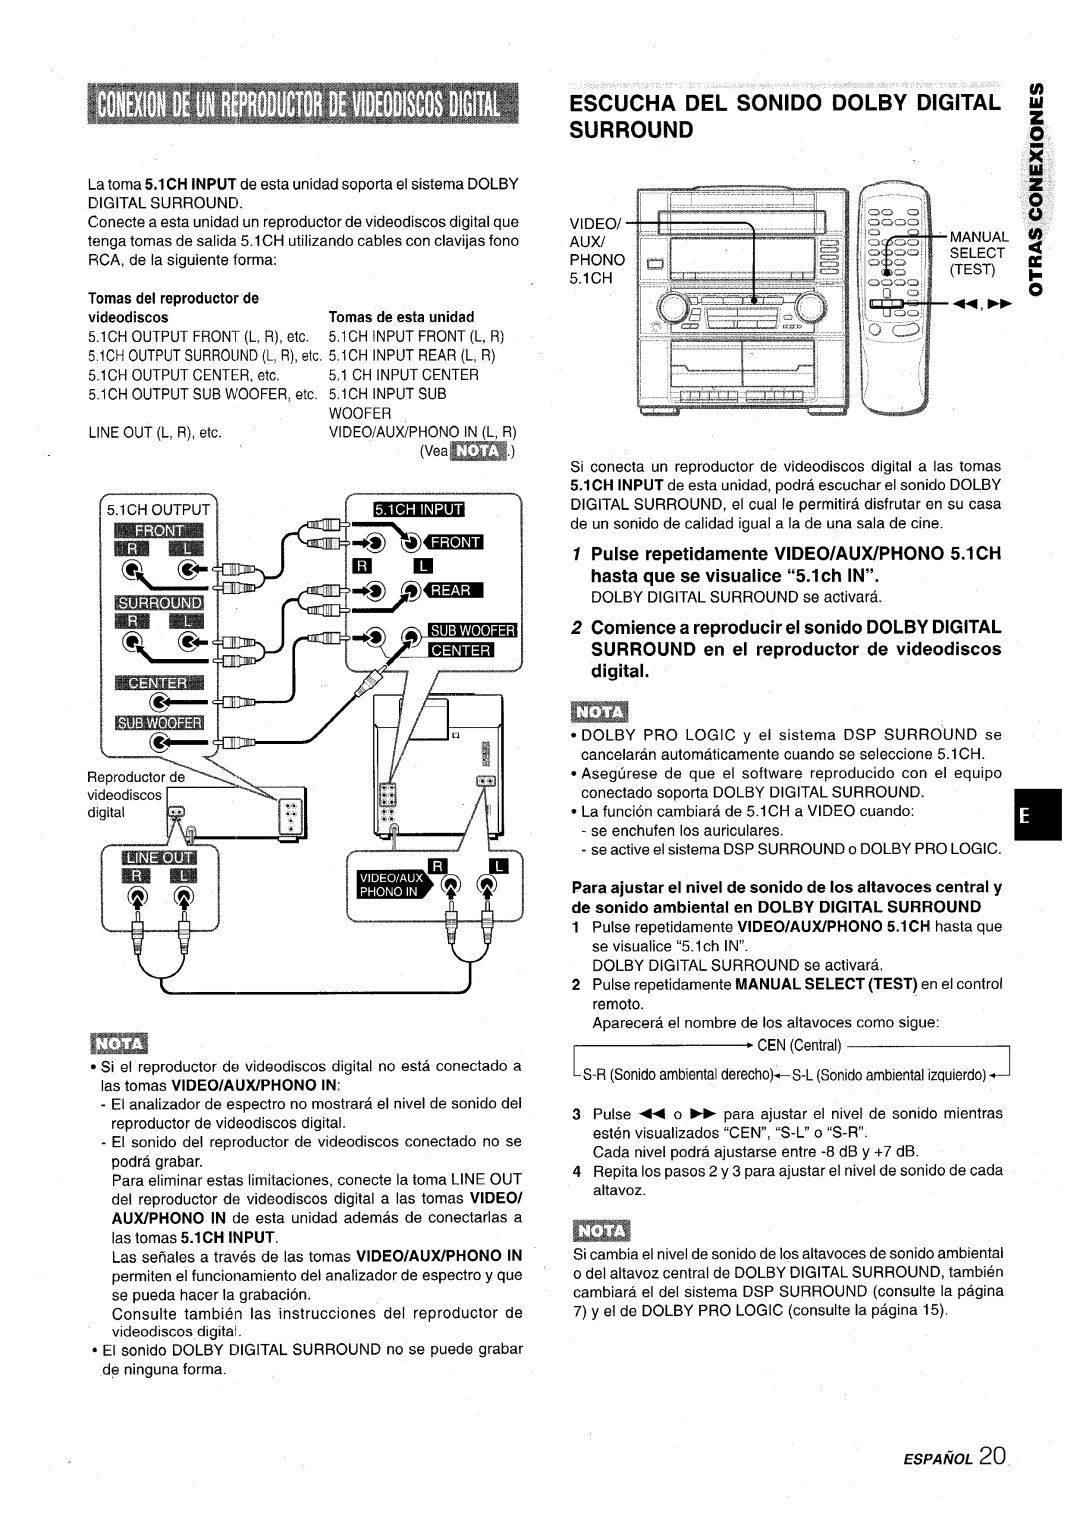 Aiwa Z-VR55 manual Pulse repetidamente VIDEO/AUX/PHONO 5.1 CH hasta que se visualice “5.1 ch IN” 